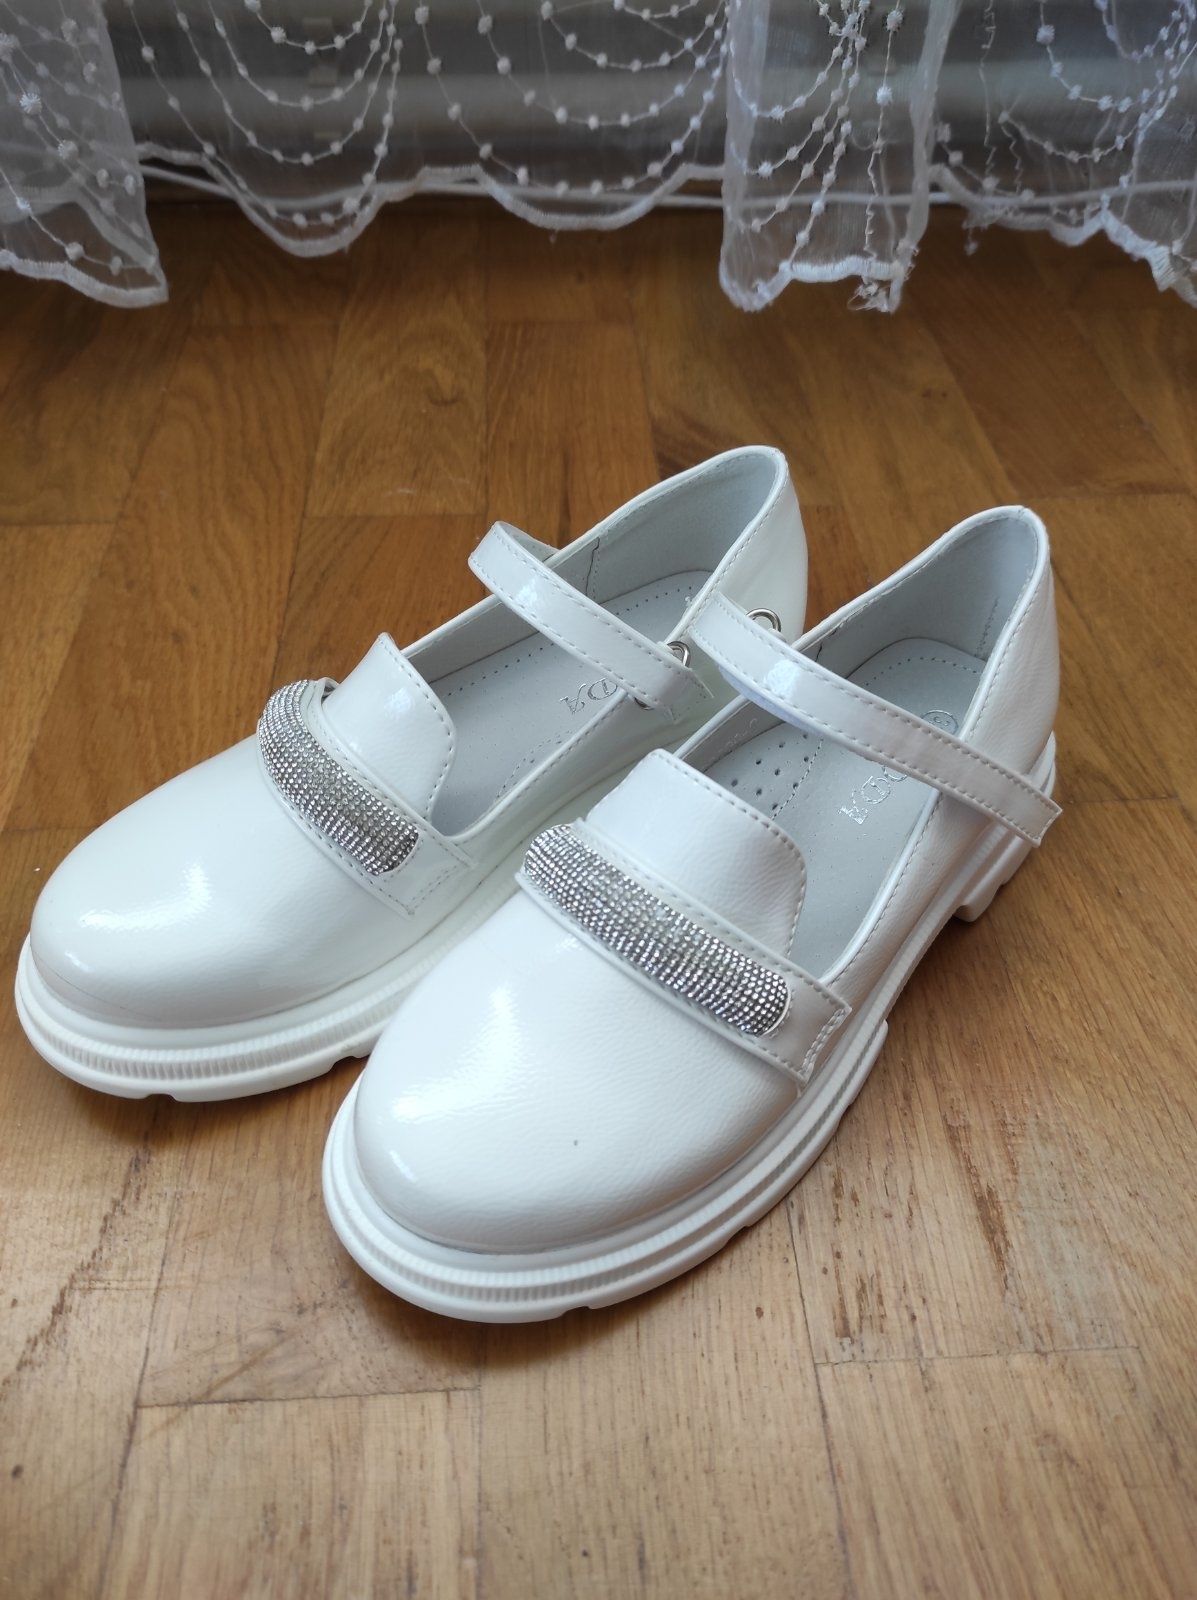 Туфлі для дівчинки білі для причастя, свята, школа каблук платформа